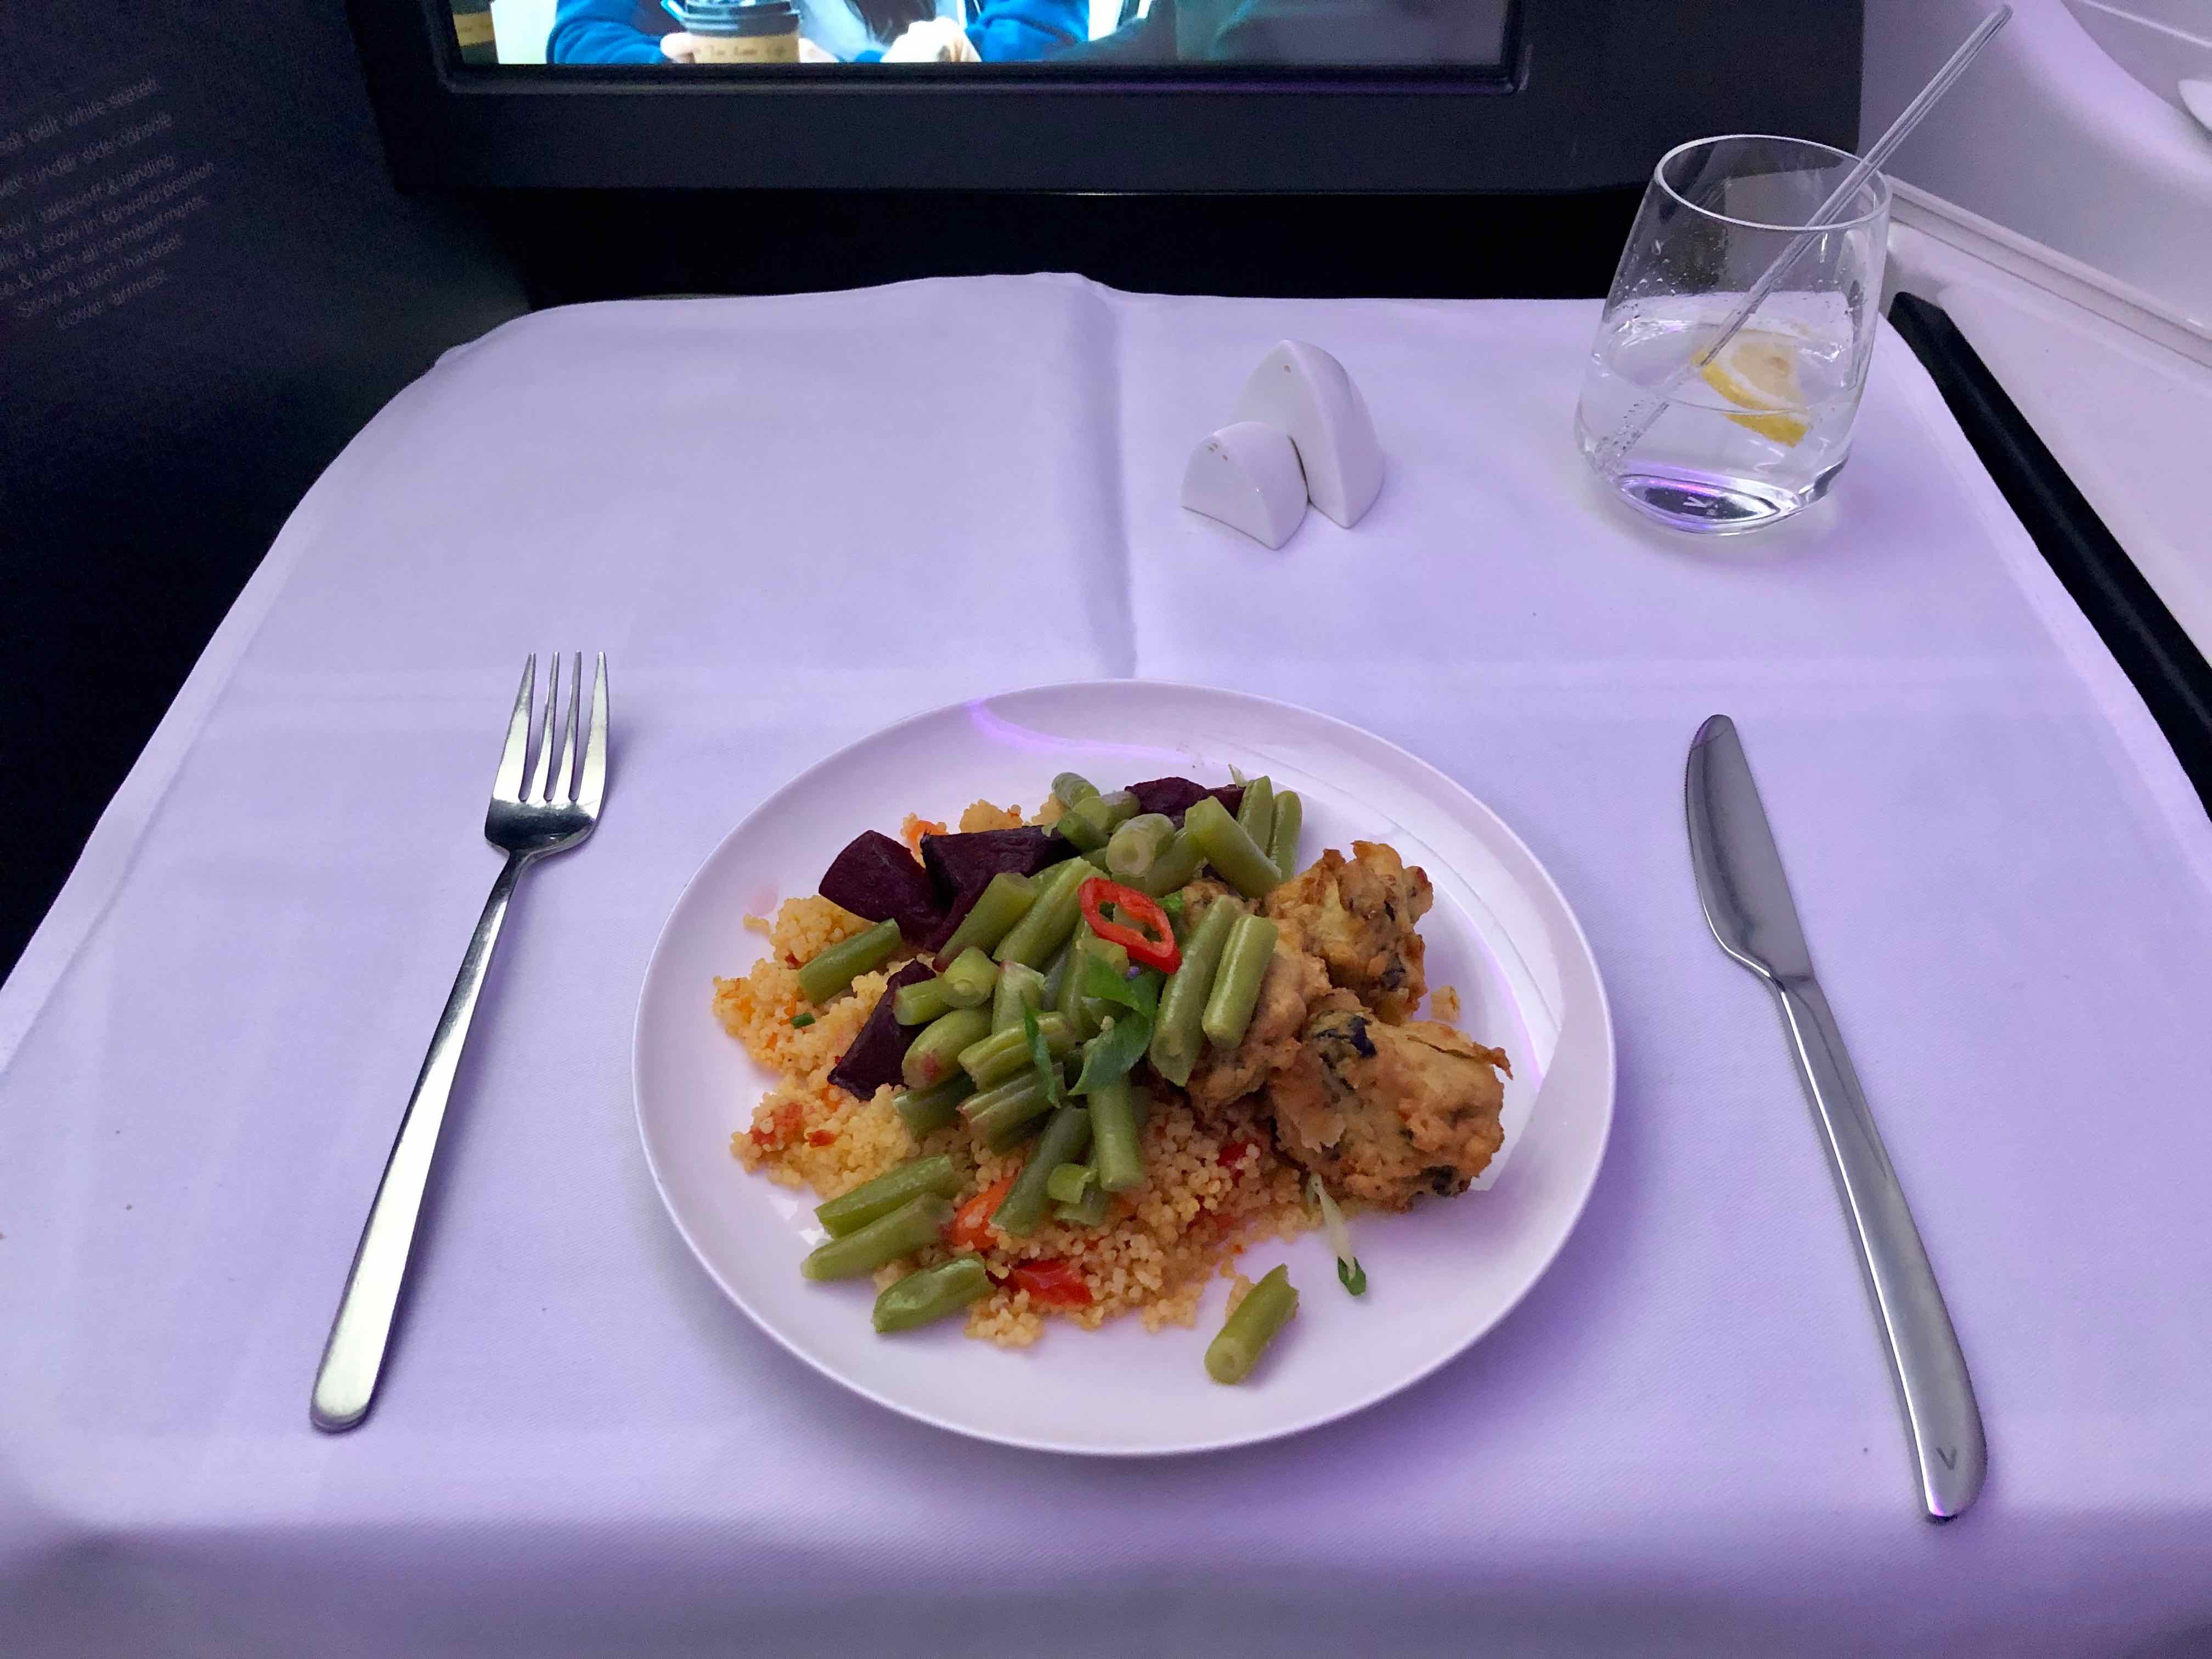 Virgin Australia A330 Business Class meal